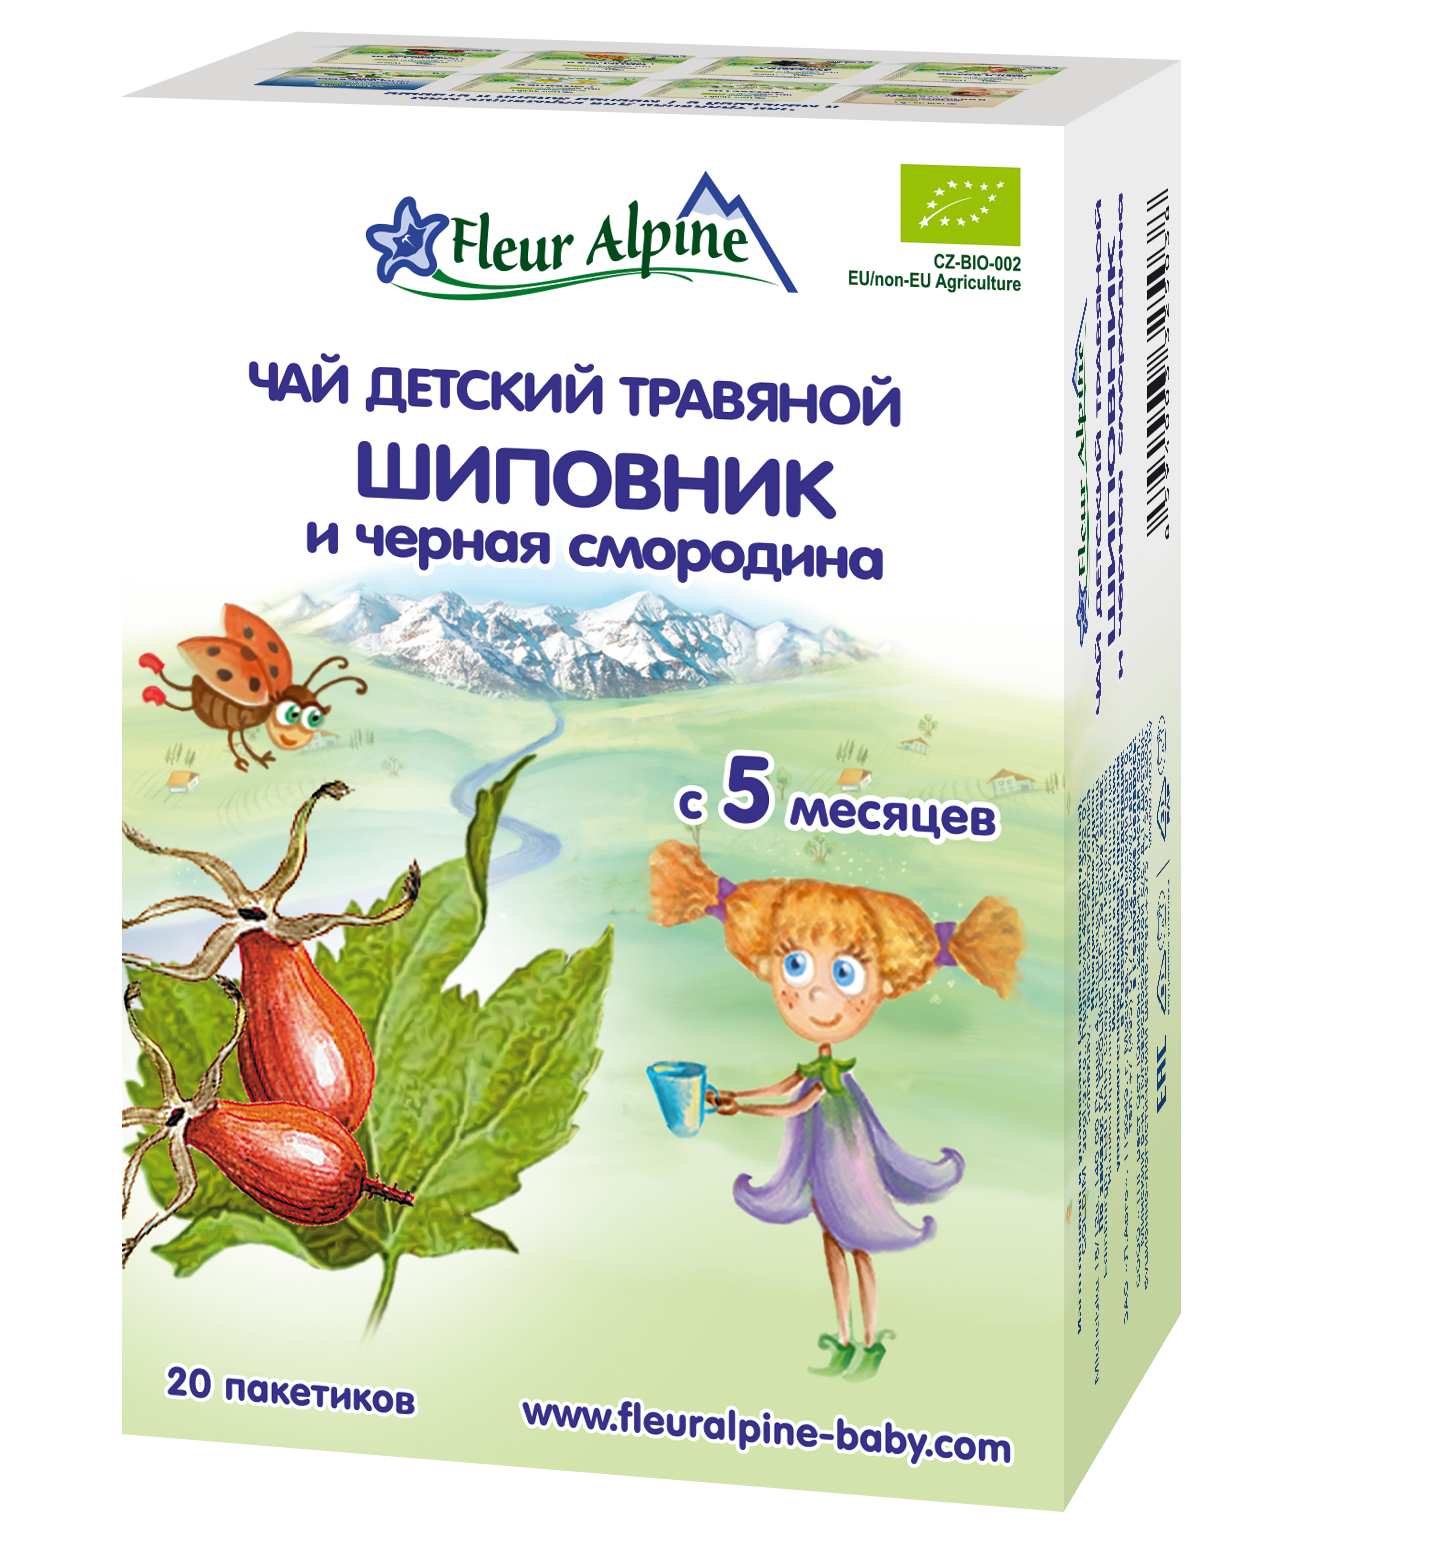 Детский травяной чай FLEUR ALPINE Шиповник и Черная Смородина, 5 мес